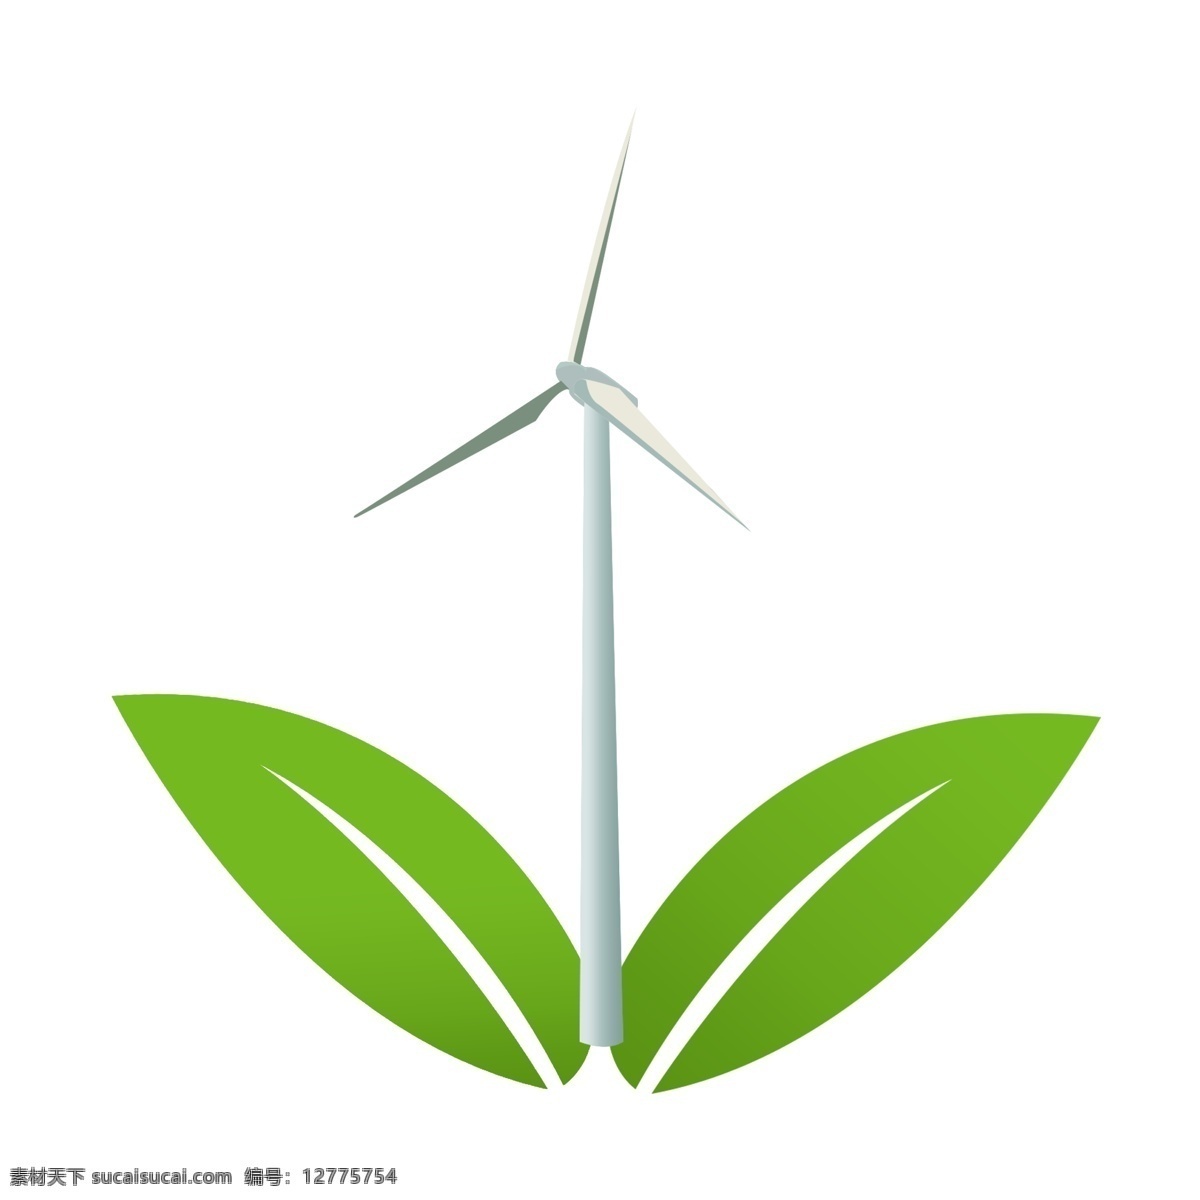 白色 风力 风车 插画 绿色的树叶 卡通插画 风车插画 环保风车 风车发电 风力发电 白色的风车